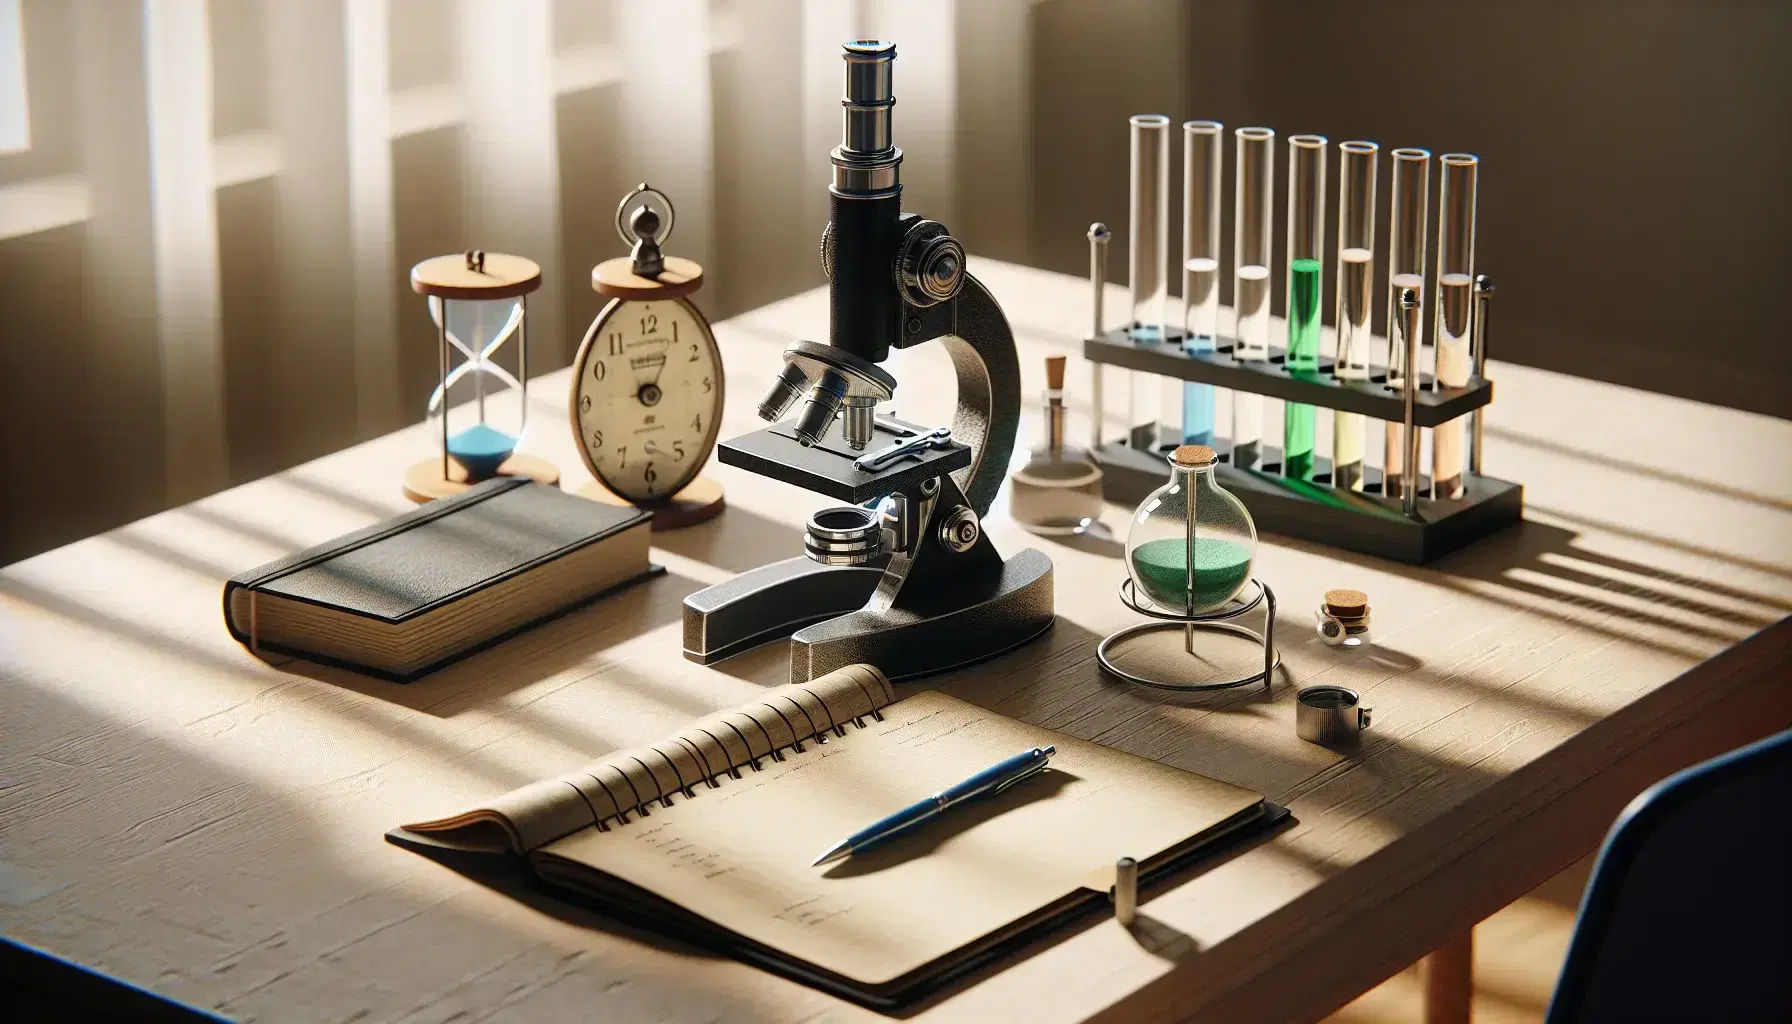 Mesa de madera clara con microscopio negro y plateado, cuaderno abierto con bolígrafo azul y probetas con líquidos de colores sostenidas por soporte metálico.